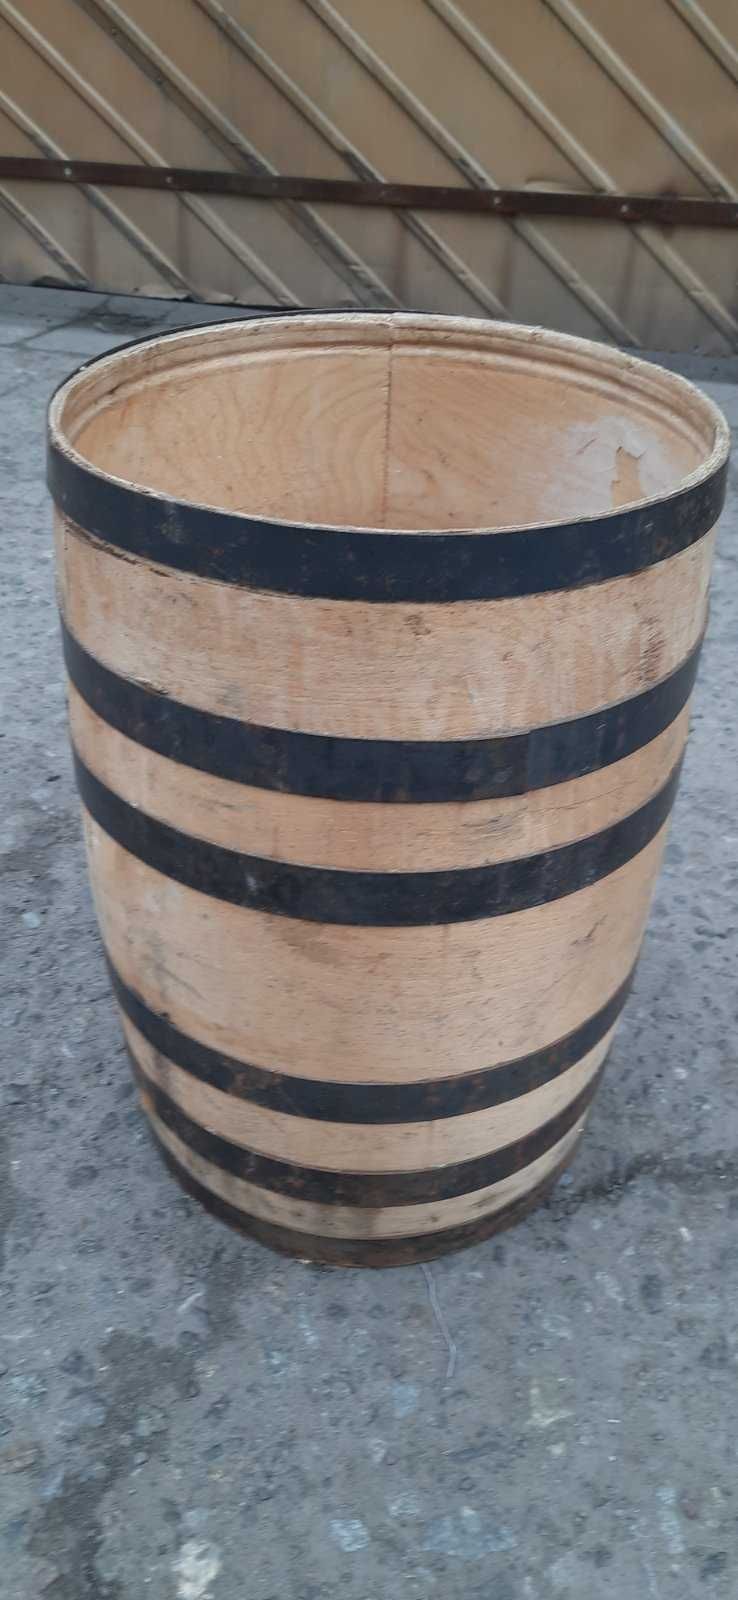 деревянная бочка на 50 литров высота 54 см диаметр 36 см